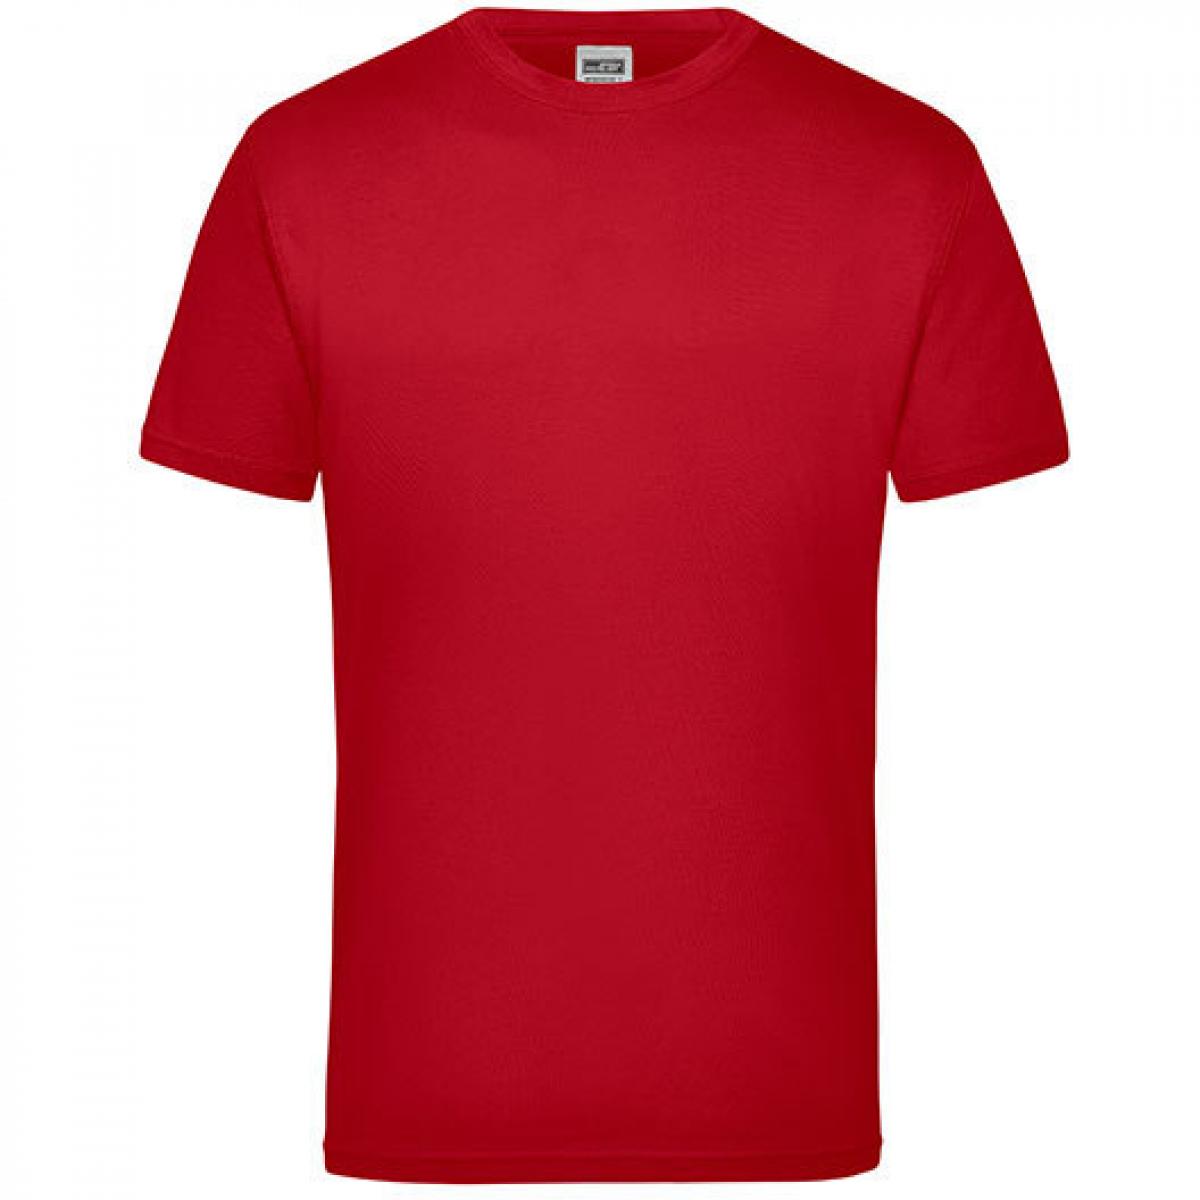 Hersteller: James+Nicholson Herstellernummer: JN 800 Artikelbezeichnung: Workwear Herren T-Shirt - waschbar bis 60 °C Farbe: Red